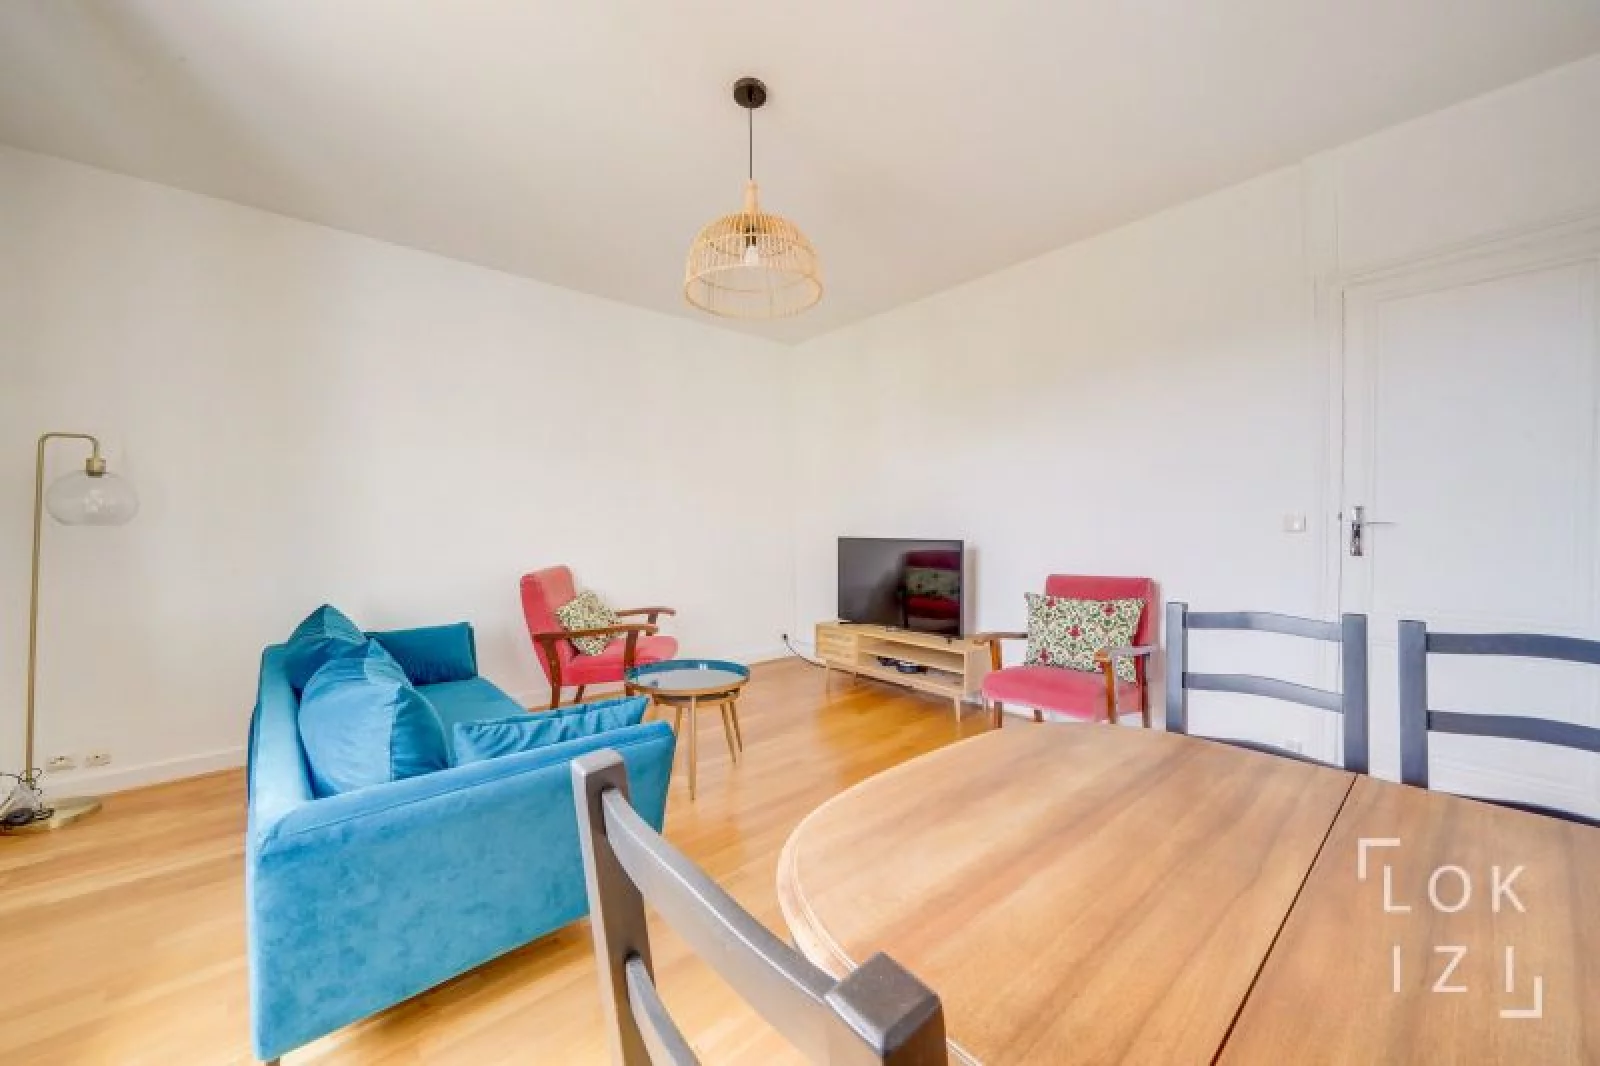 Location appartement meublé 3 pièces 83m²  (Bordeaux - Chartrons)